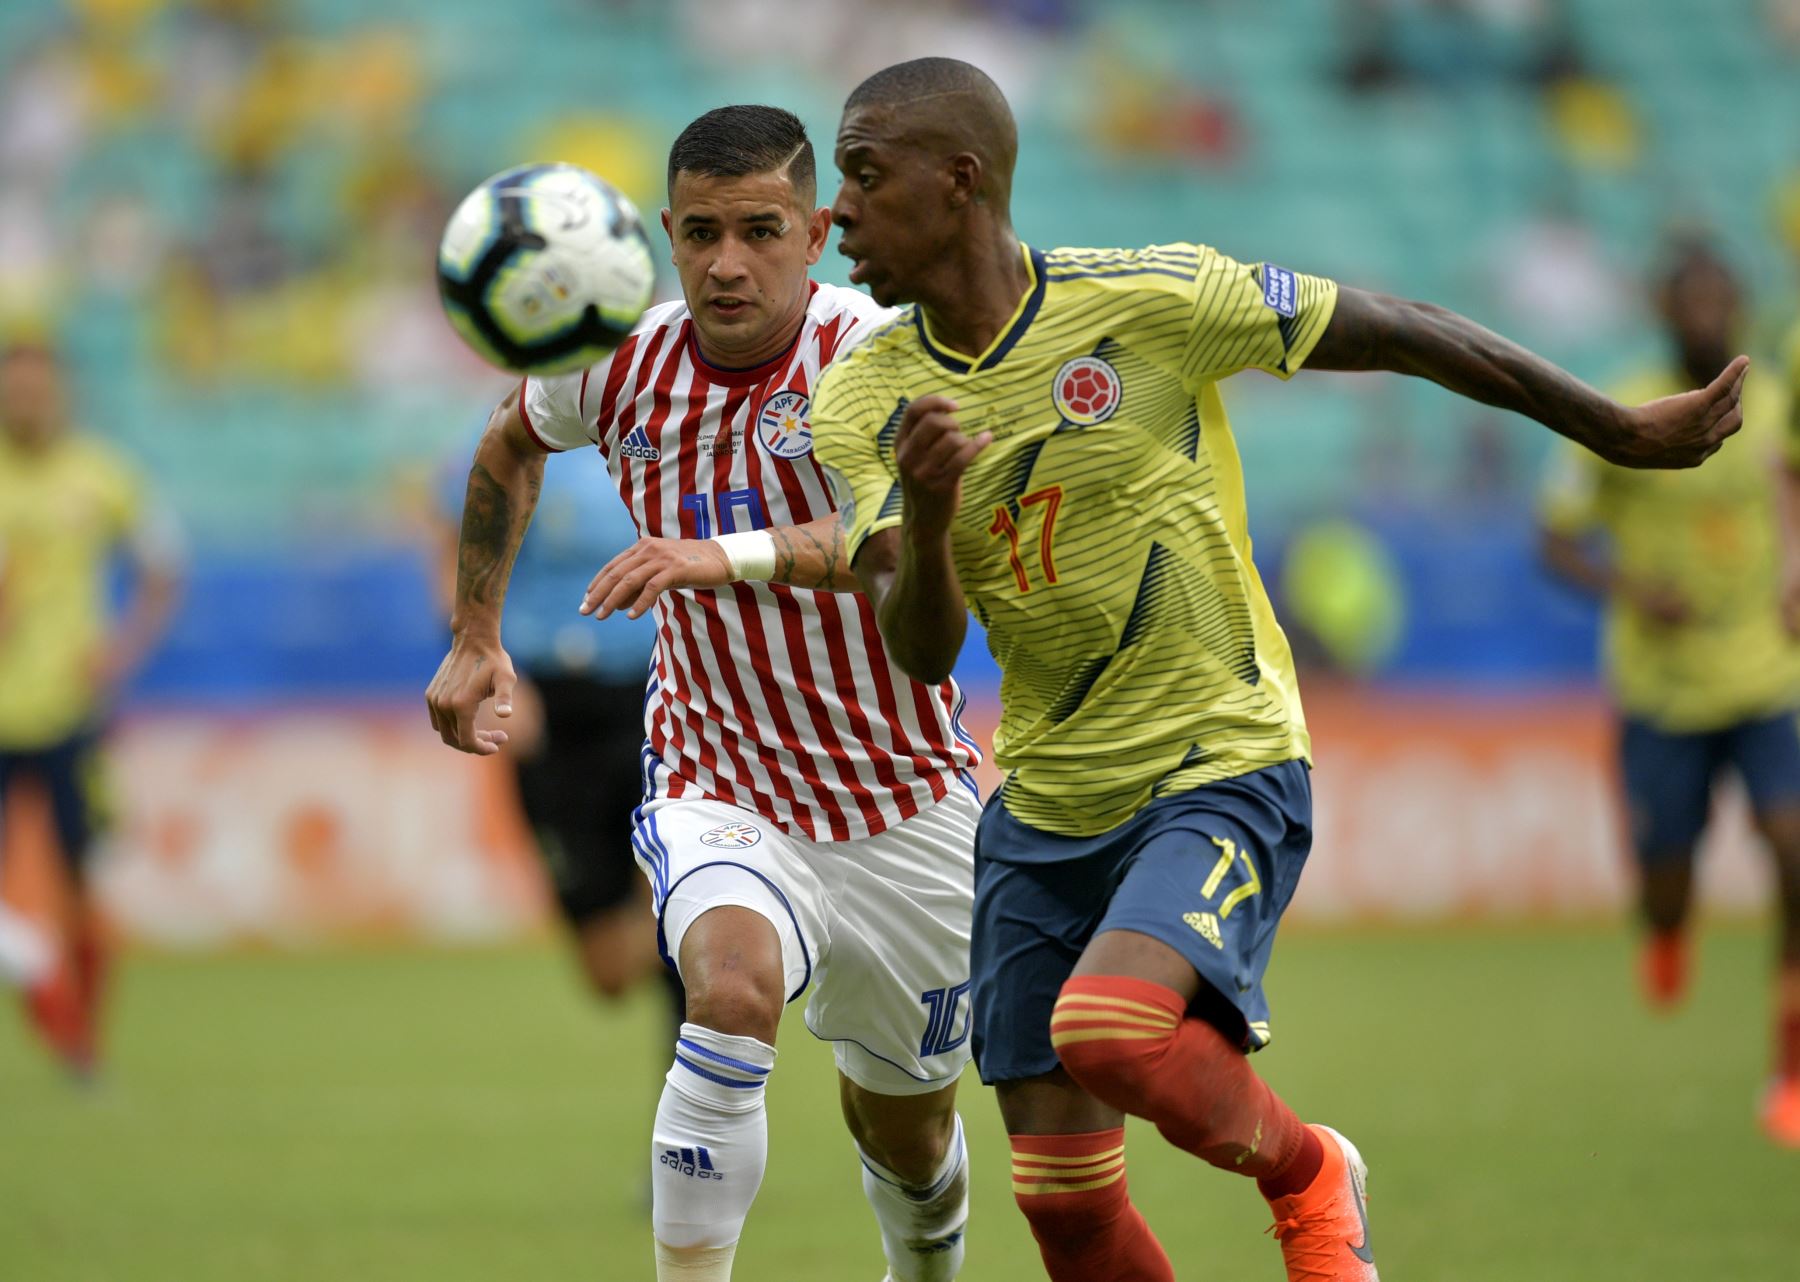 El paraguayo Derlis González (L) y el colombiano Cristian Borja compiten por el balón durante su partido de torneo de fútbol de la Copa América.
Foto: AFP